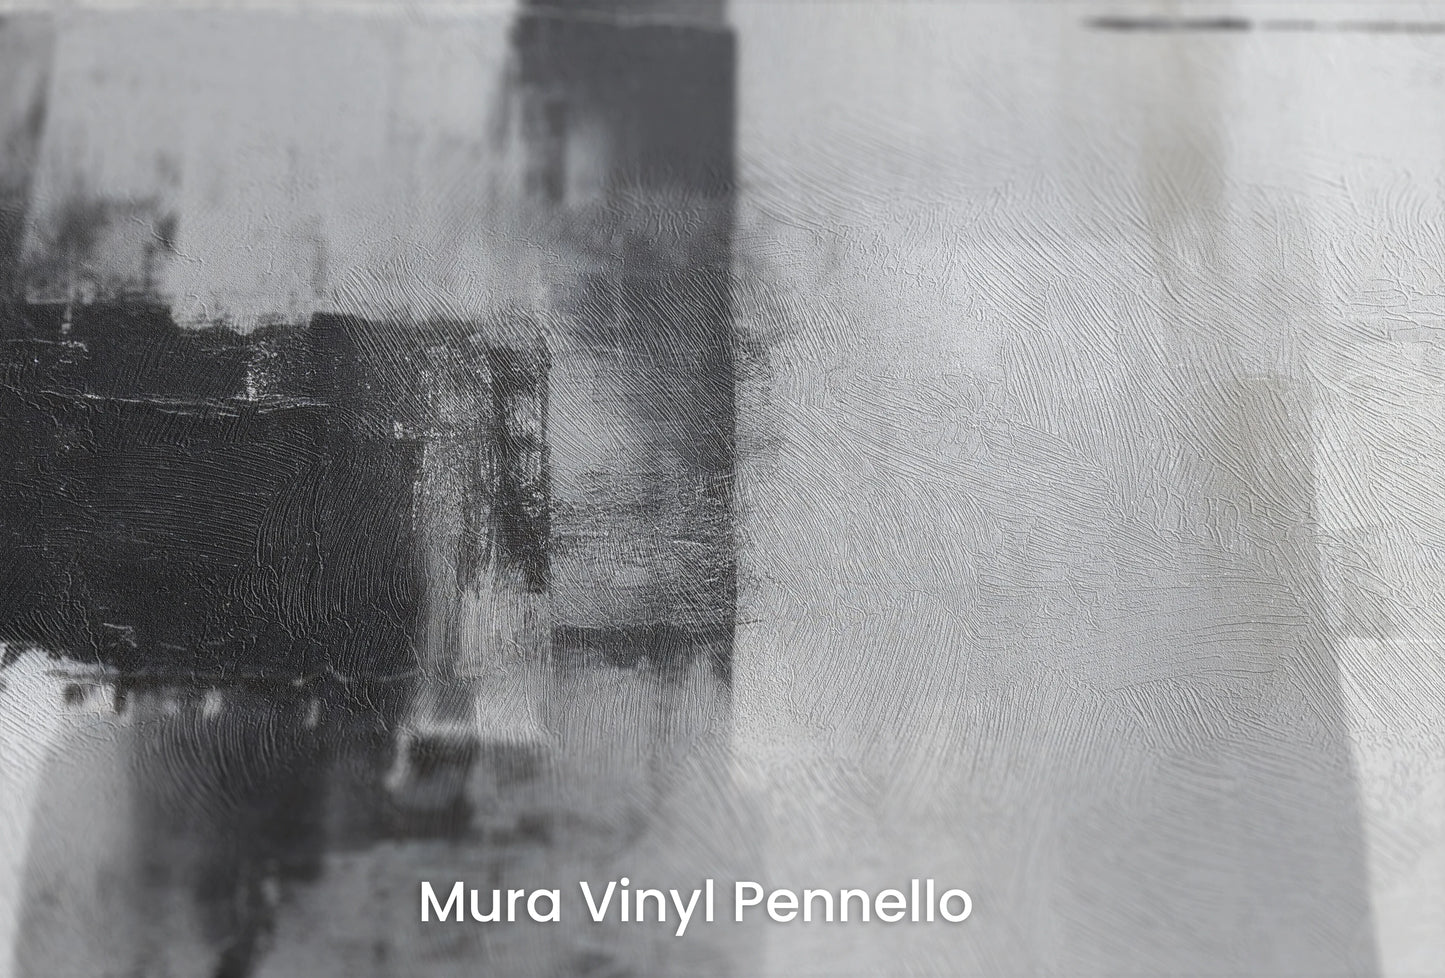 Zbliżenie na artystyczną fototapetę o nazwie Intersecting Planes na podłożu Mura Vinyl Pennello - faktura pociągnięć pędzla malarskiego.